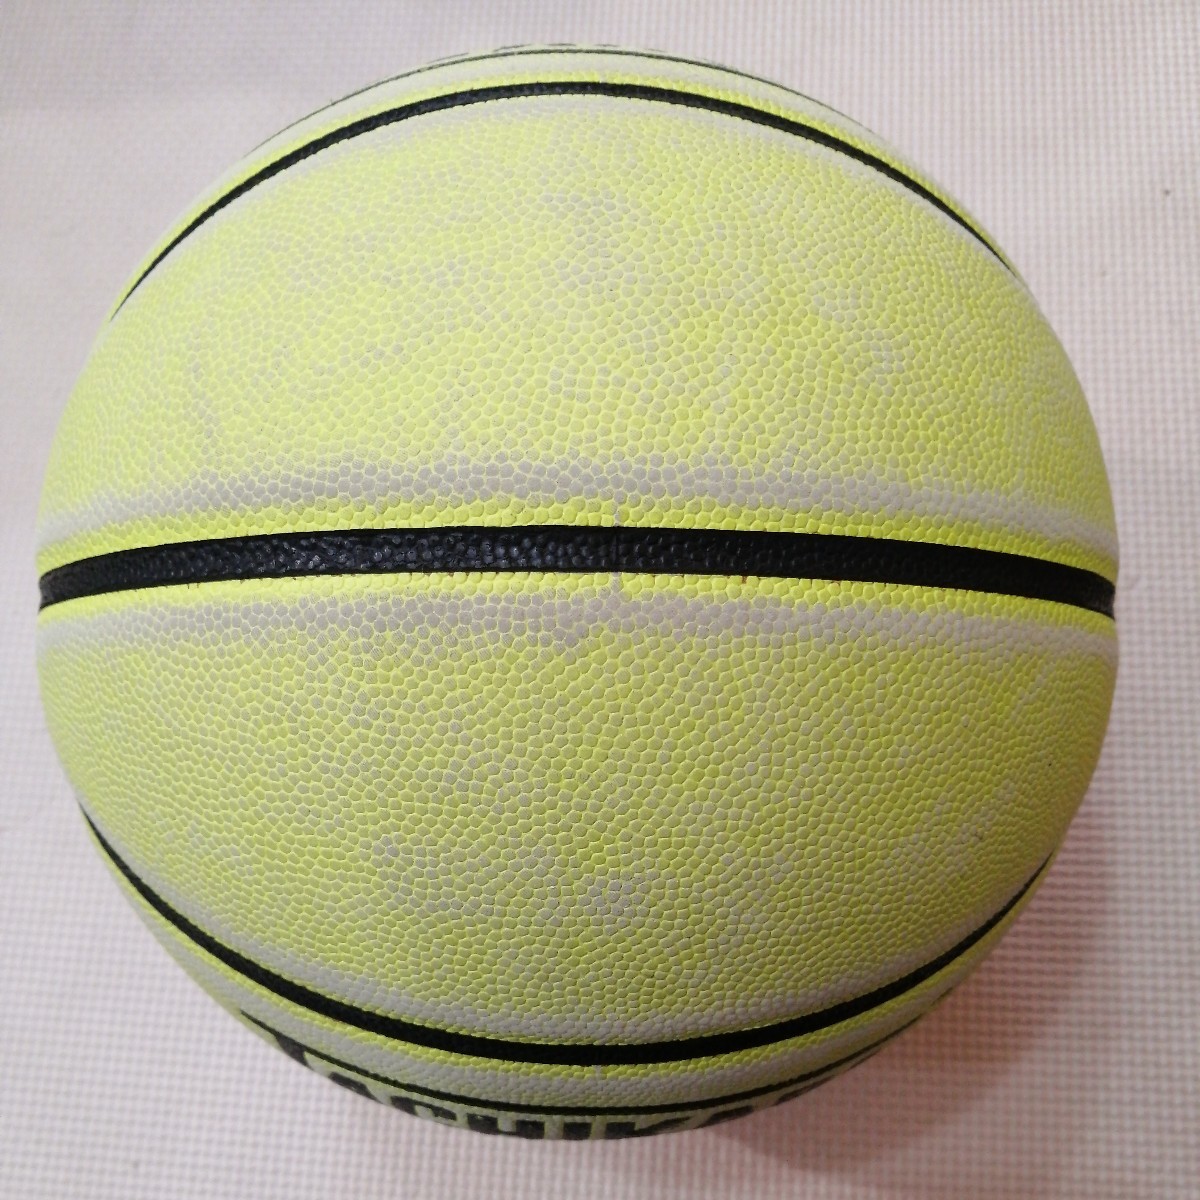 中古品 バスケットボール 7号 人工皮革製「TACHIKARA タチカラ FLASHBALL フラッシュボール ネオンイエロー」(検) molten MIKASA の画像2